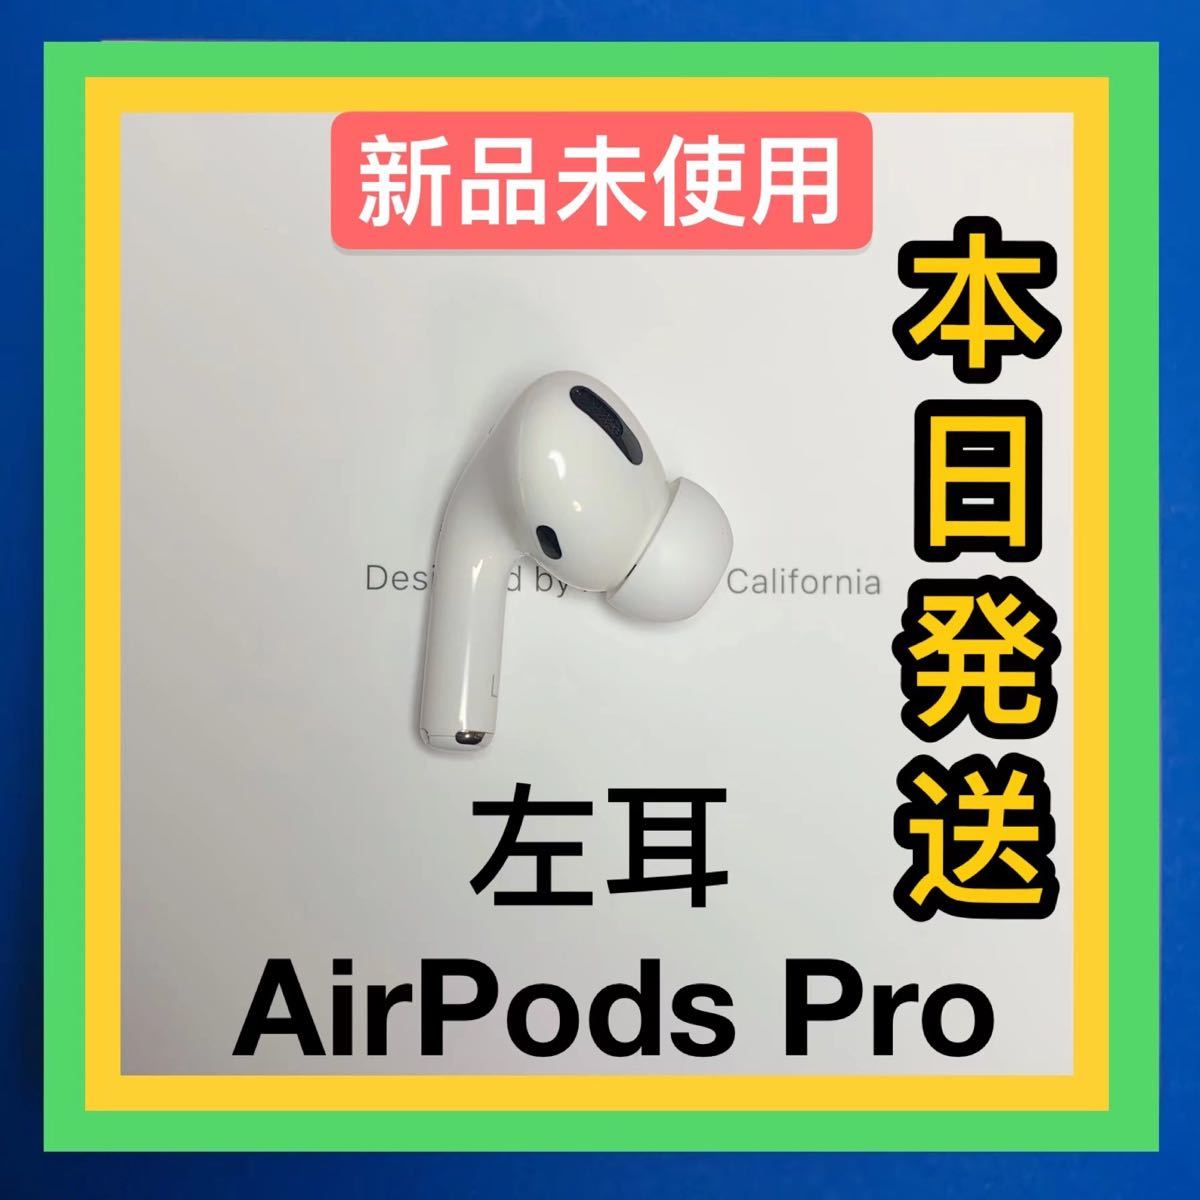 オーディオ機器 イヤフォン 大人気商品 【純正品】AirPods Pro イヤホン 左耳 のみ MWP22J/A 